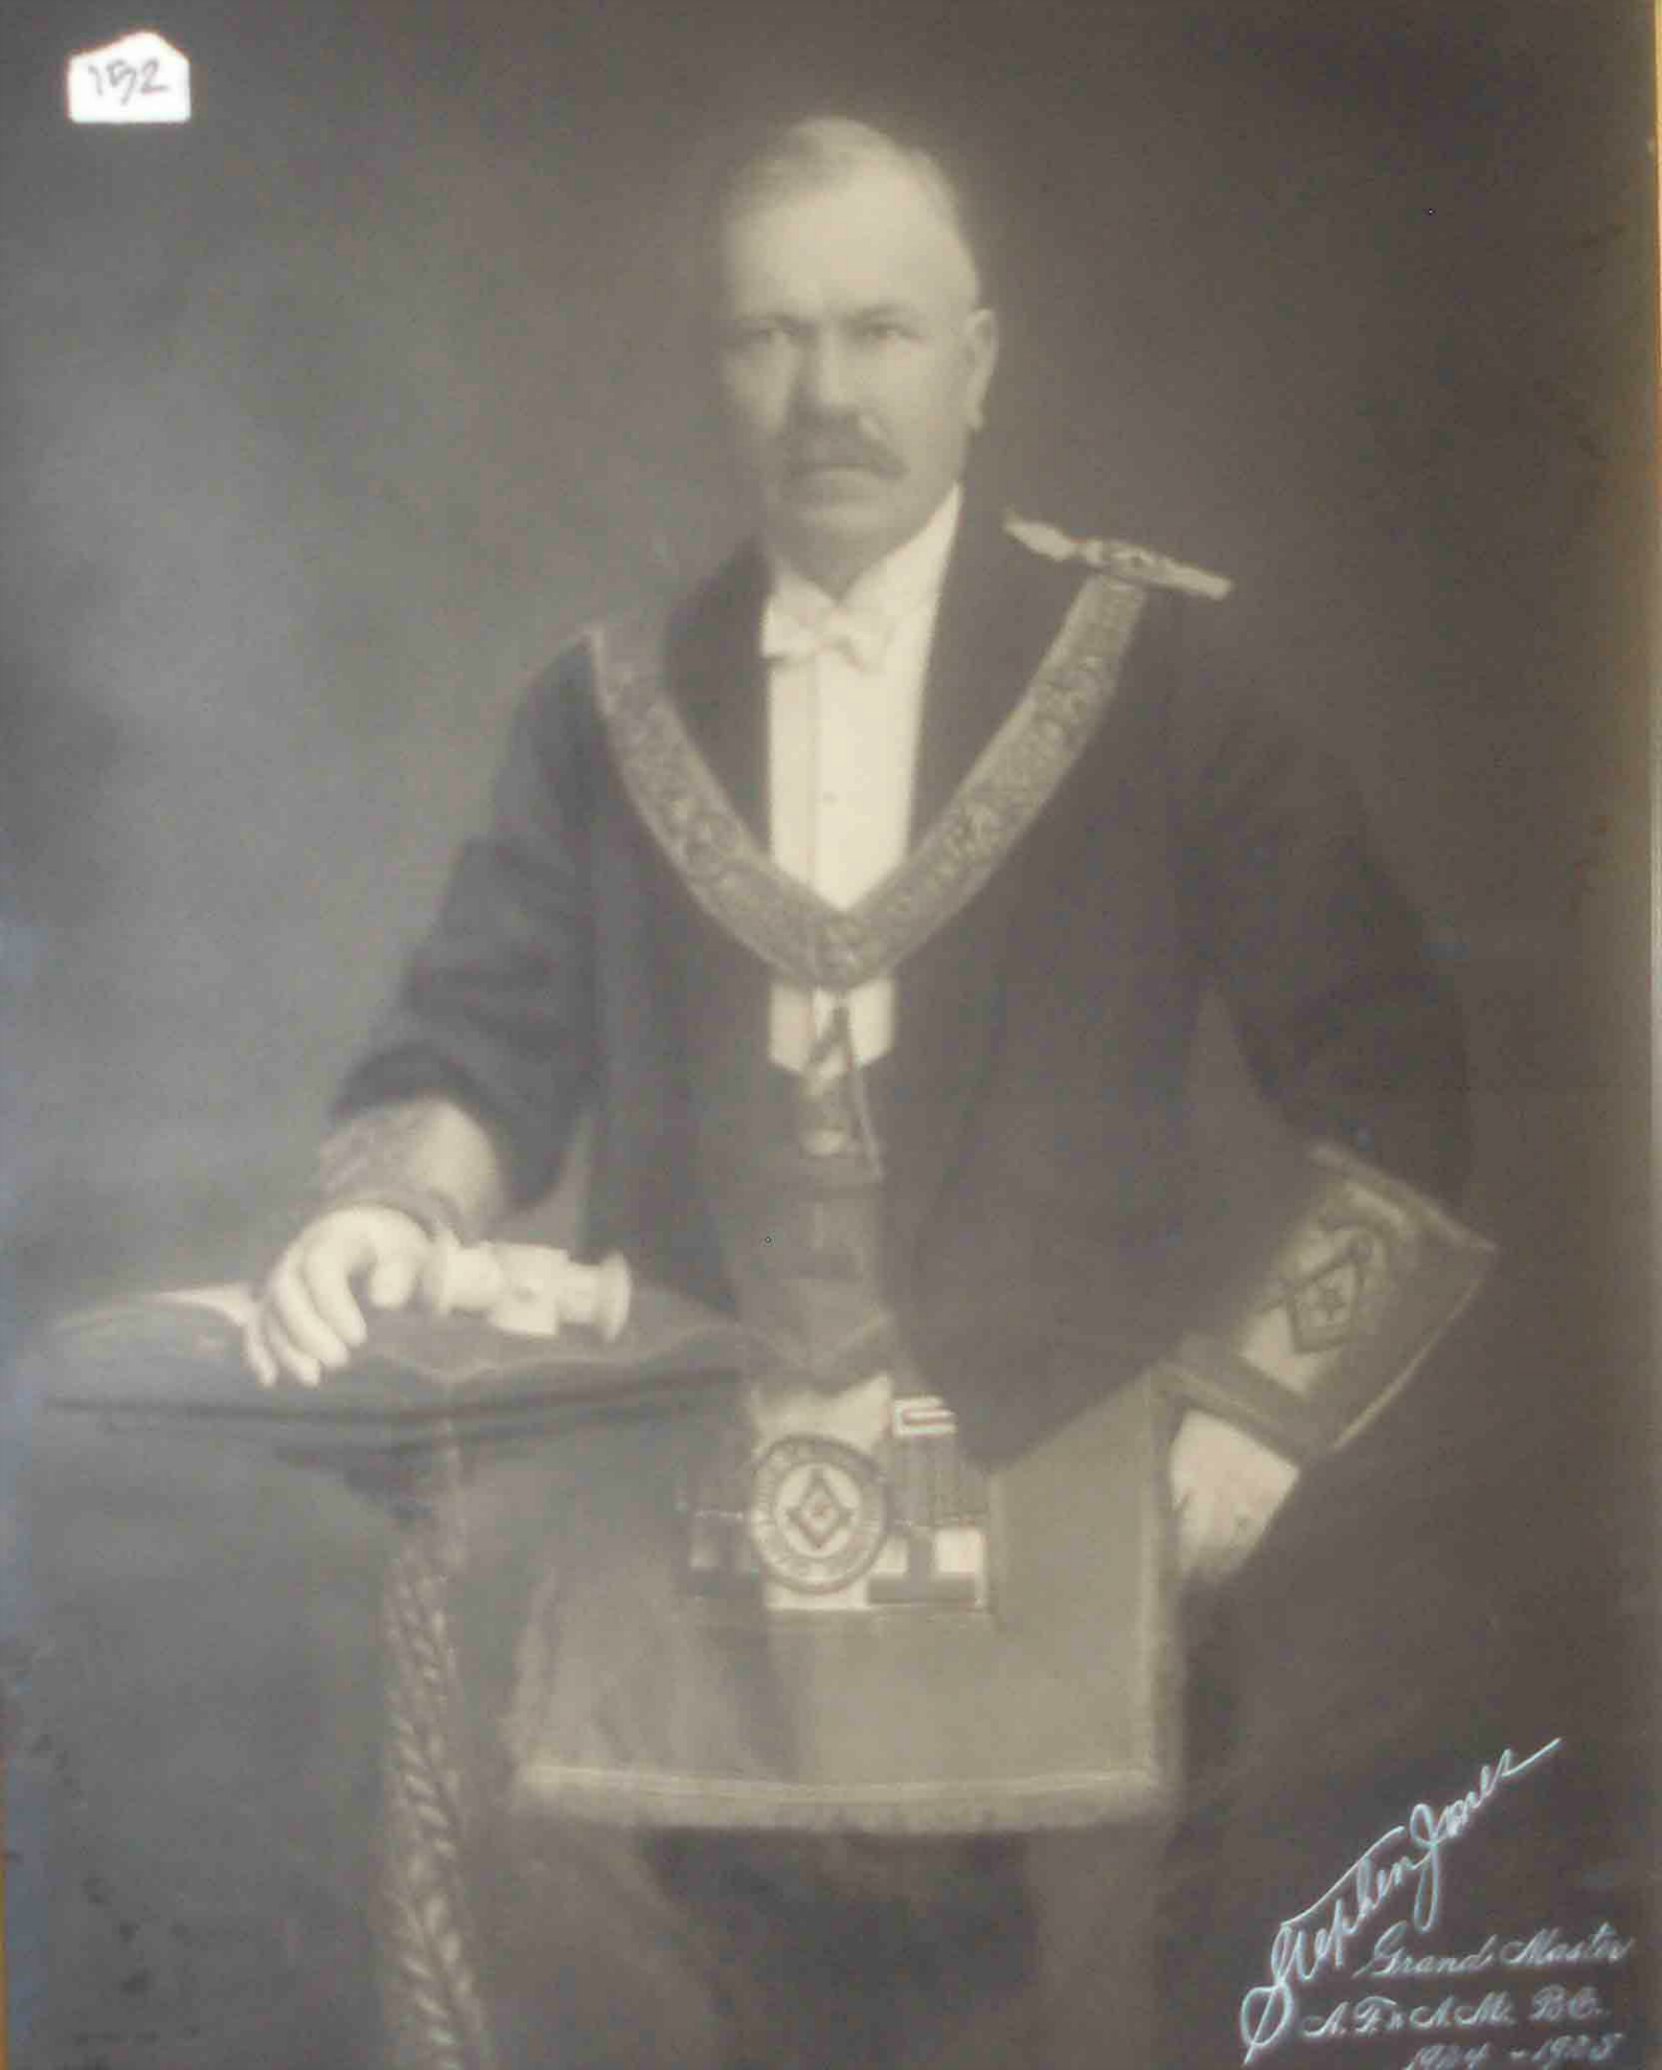 Stephen Jones as Grand Master of B.C., 1924-25 (Photo - Grand Lodge of B.C. & Yukon)